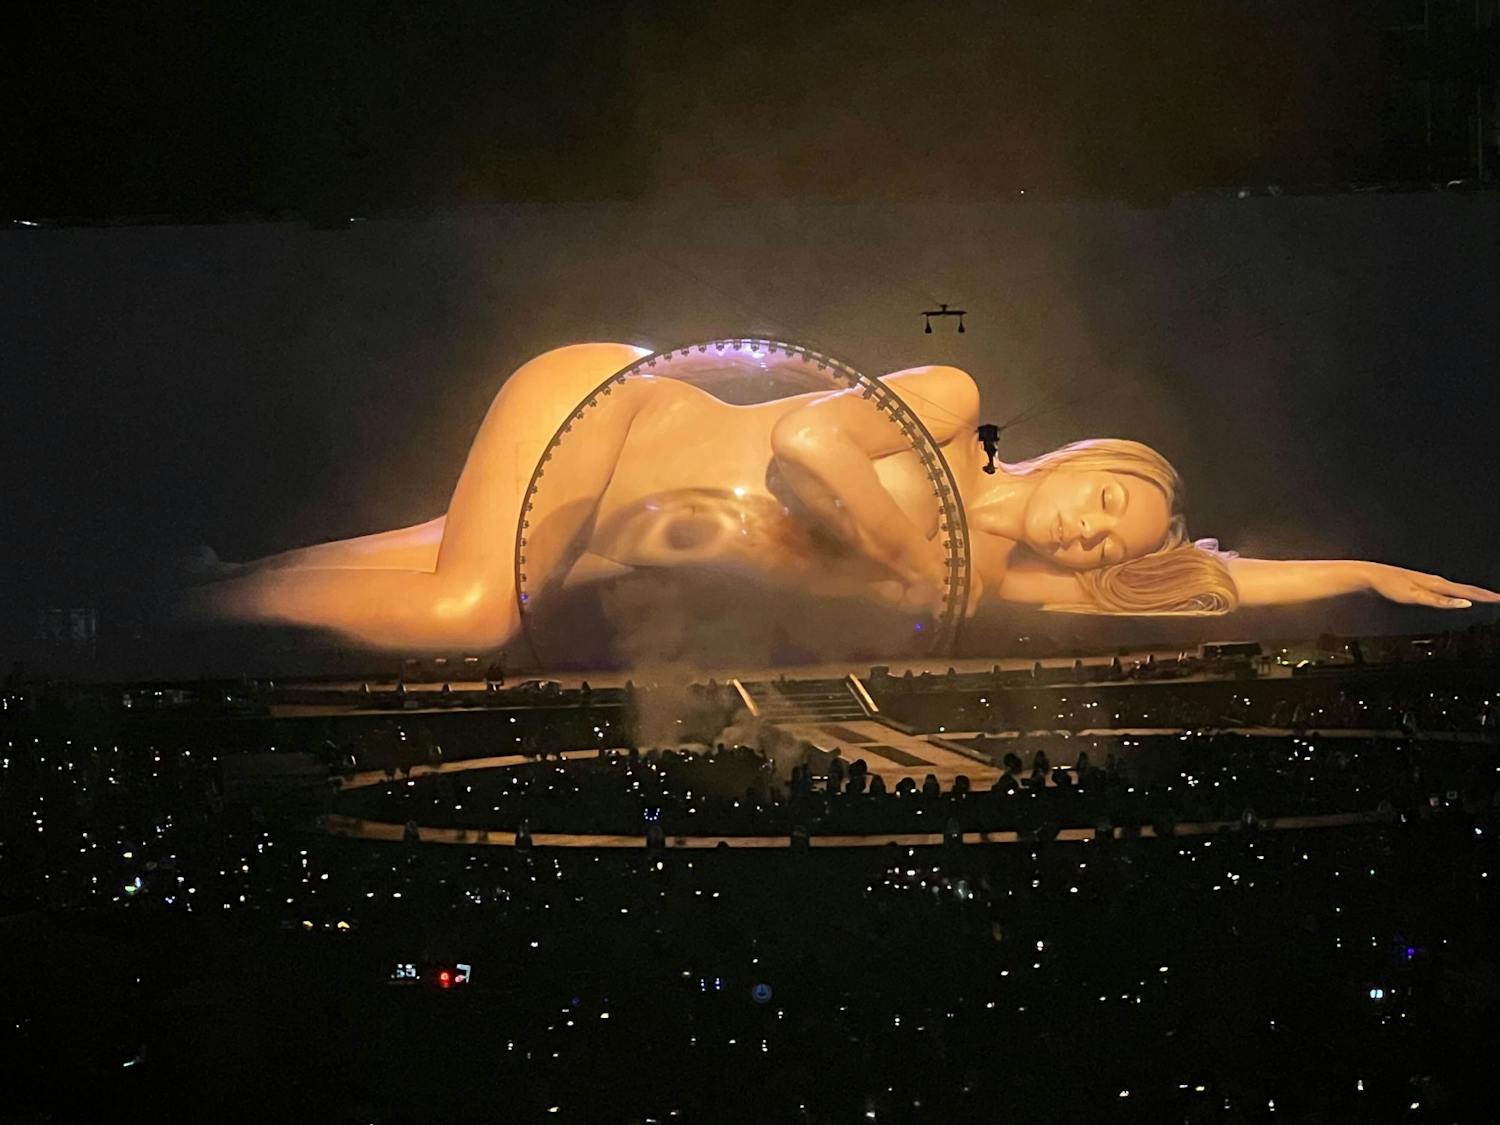 Beyoncé gives fans a riveting evening at the Renaissance tour